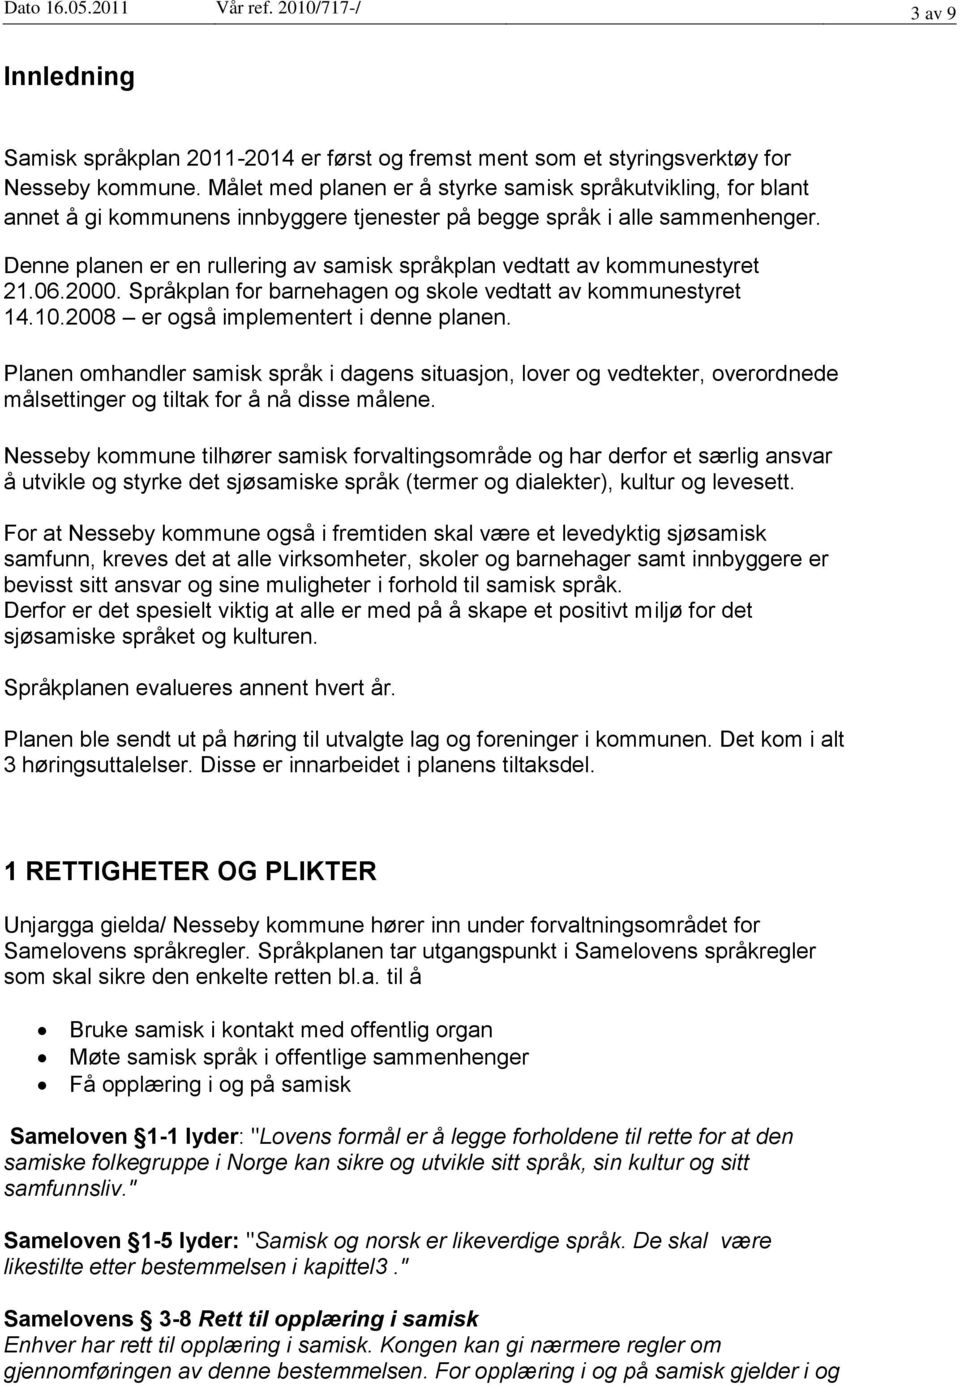 Denne planen er en rullering av samisk språkplan vedtatt av kommunestyret 21.06.2000. Språkplan for barnehagen og skole vedtatt av kommunestyret 14.10.2008 er også implementert i denne planen.